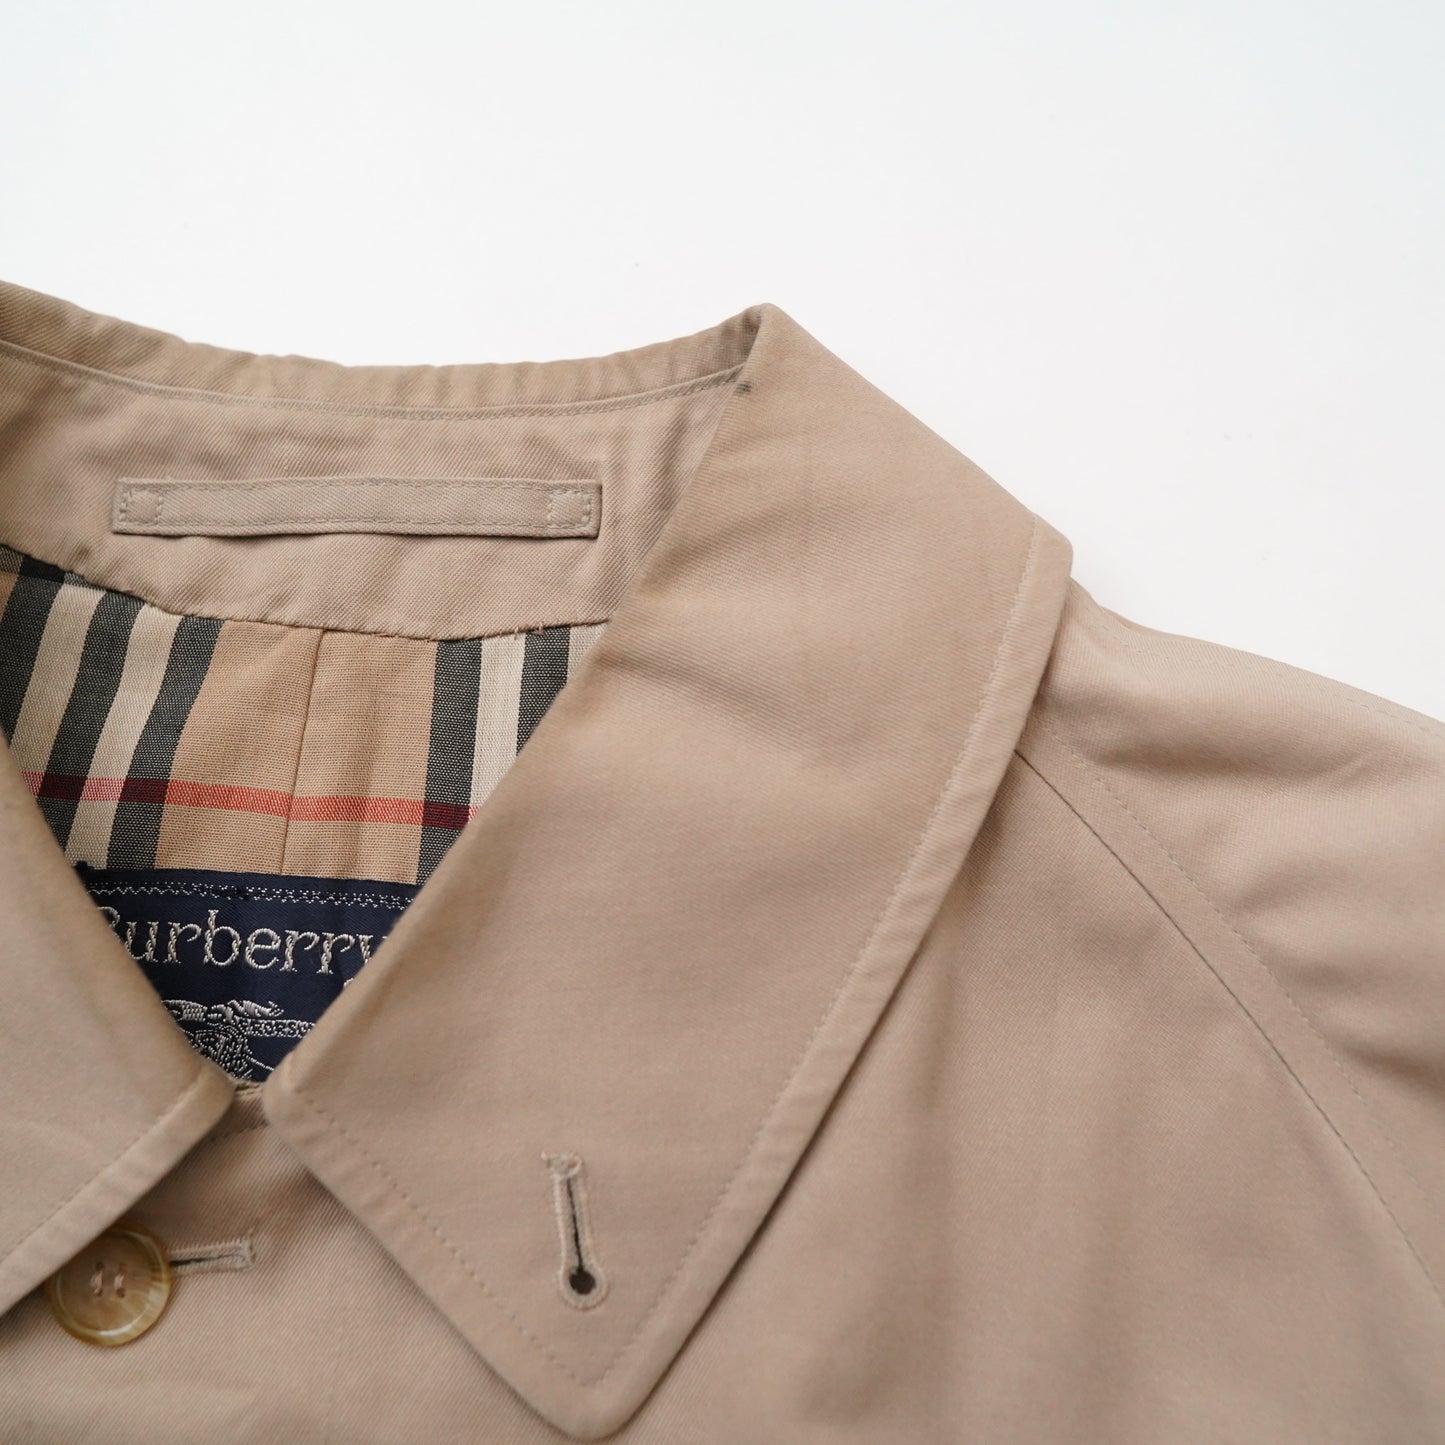 90s Burberrys coat